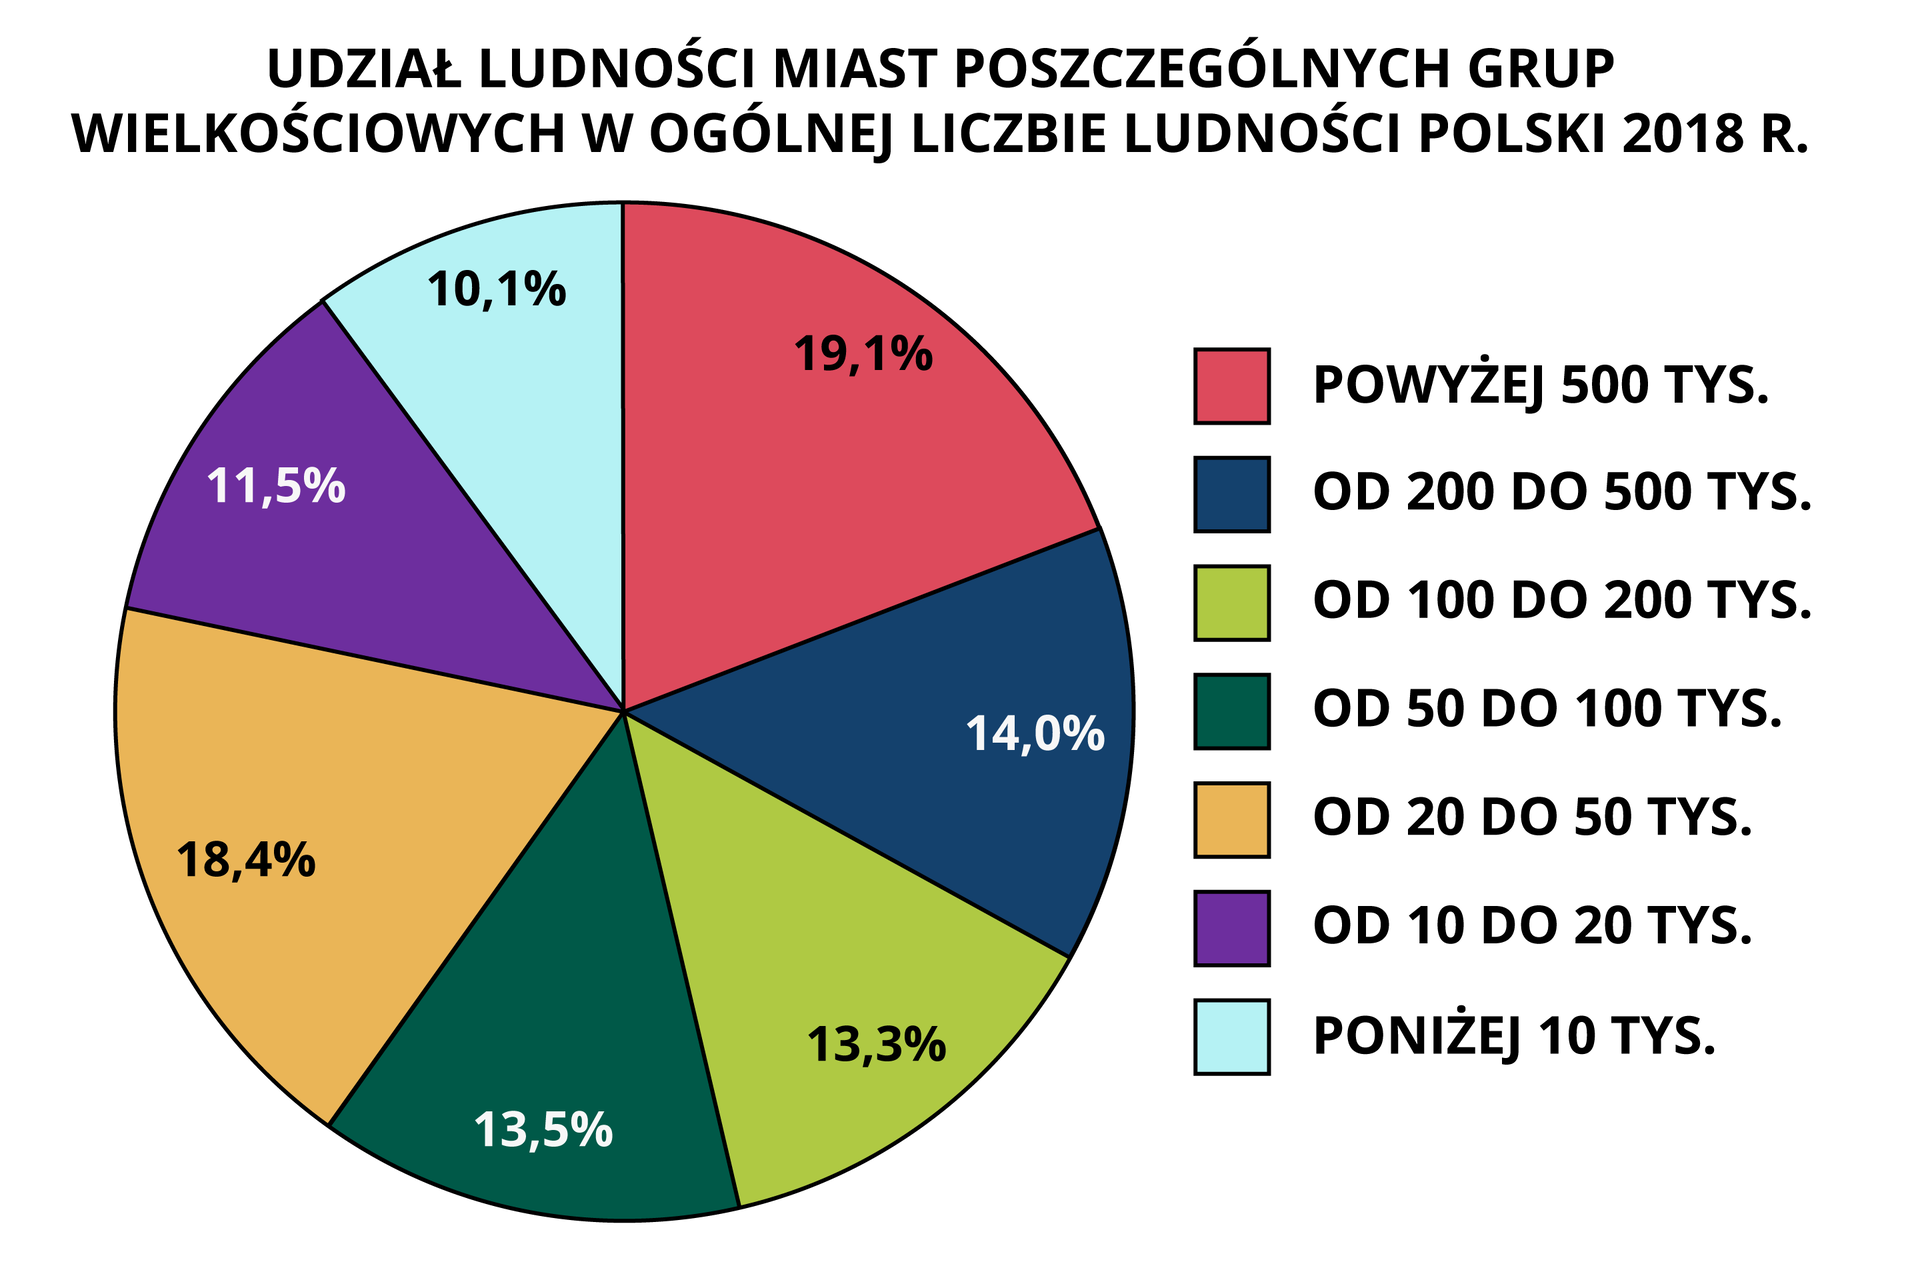 Na wykresie kołowym przedstawiono udział ludności miast poszczególnych grup wielkościowych w ogólnej liczbie ludności Polski w 2018 roku. Powyżej 500 tysięcy – 19,1%, od 200 do 500 tysięcy – 14%, od 100 do 200 tysięcy – 13,3%, od 50 do 100 tysięcy – 13,5%, od 20 do 50 tysięcy – 18,4%, od 10 do 20 tysięcy – 11,5%, poniżej 10 tysięcy 10,1%.